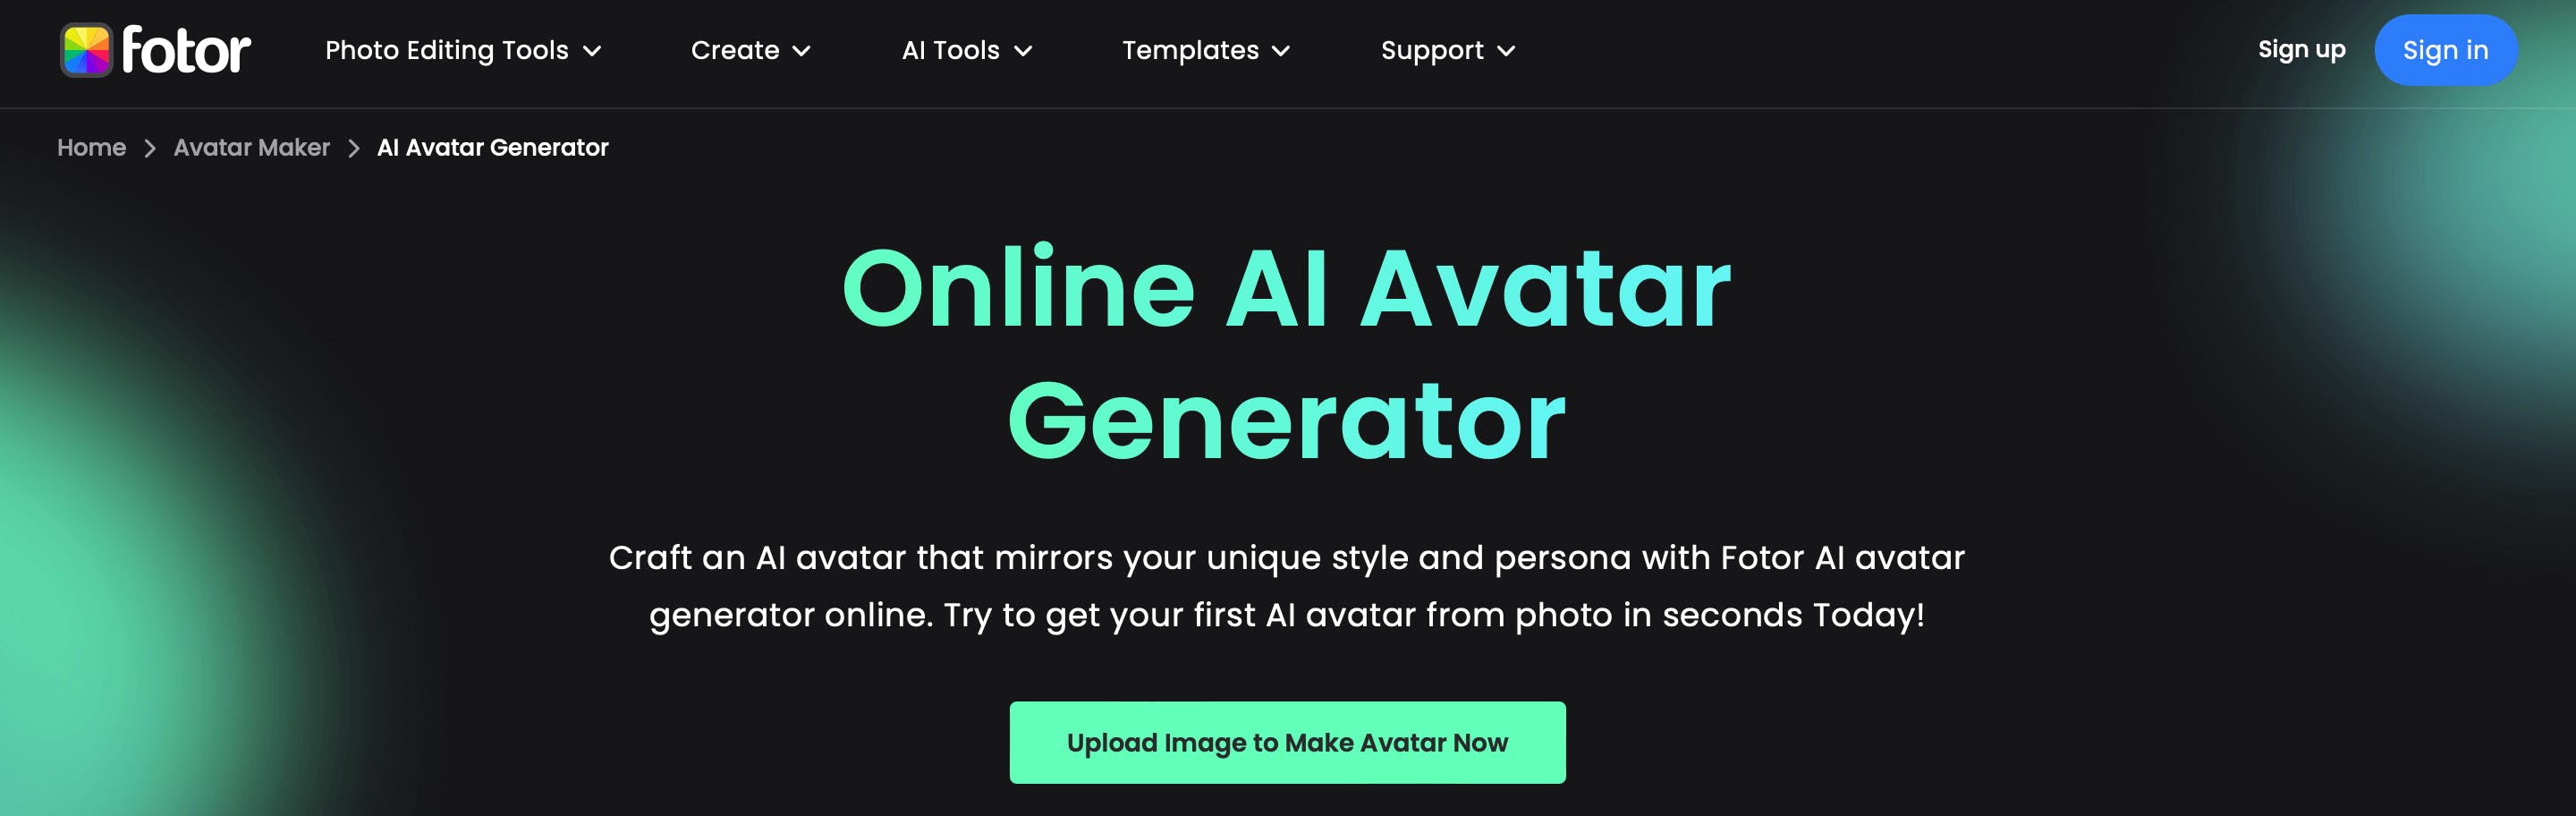 Avatar Maker: Make Your Own Avatars Free Online, Fotor